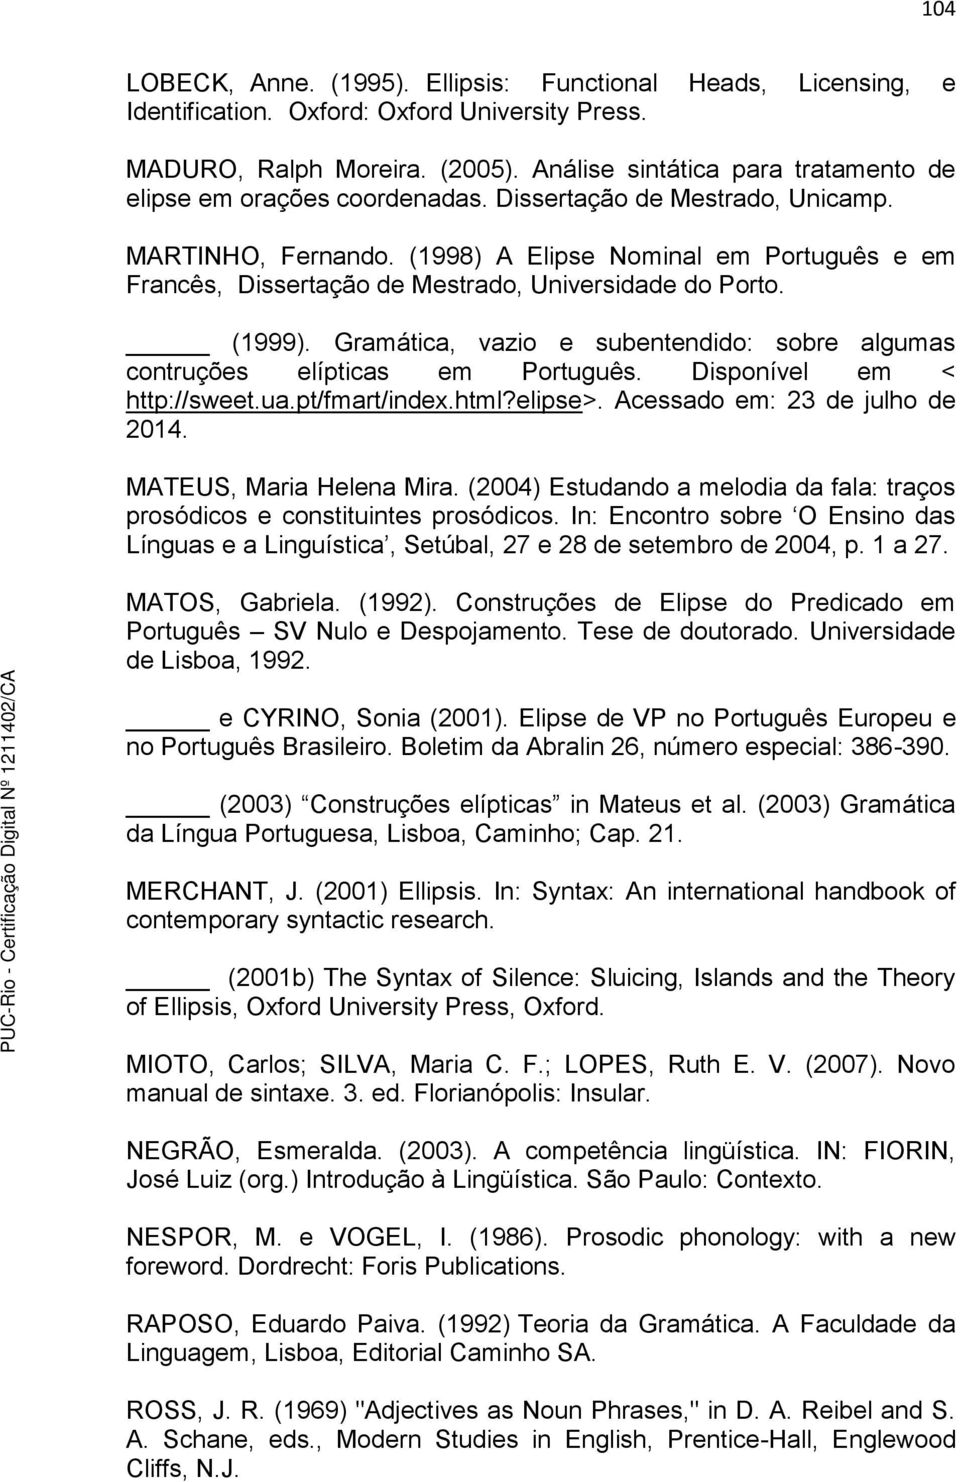 (1998) A Elipse Nominal em Português e em Francês, Dissertação de Mestrado, Universidade do Porto. (1999). Gramática, vazio e subentendido: sobre algumas contruções elípticas em Português.